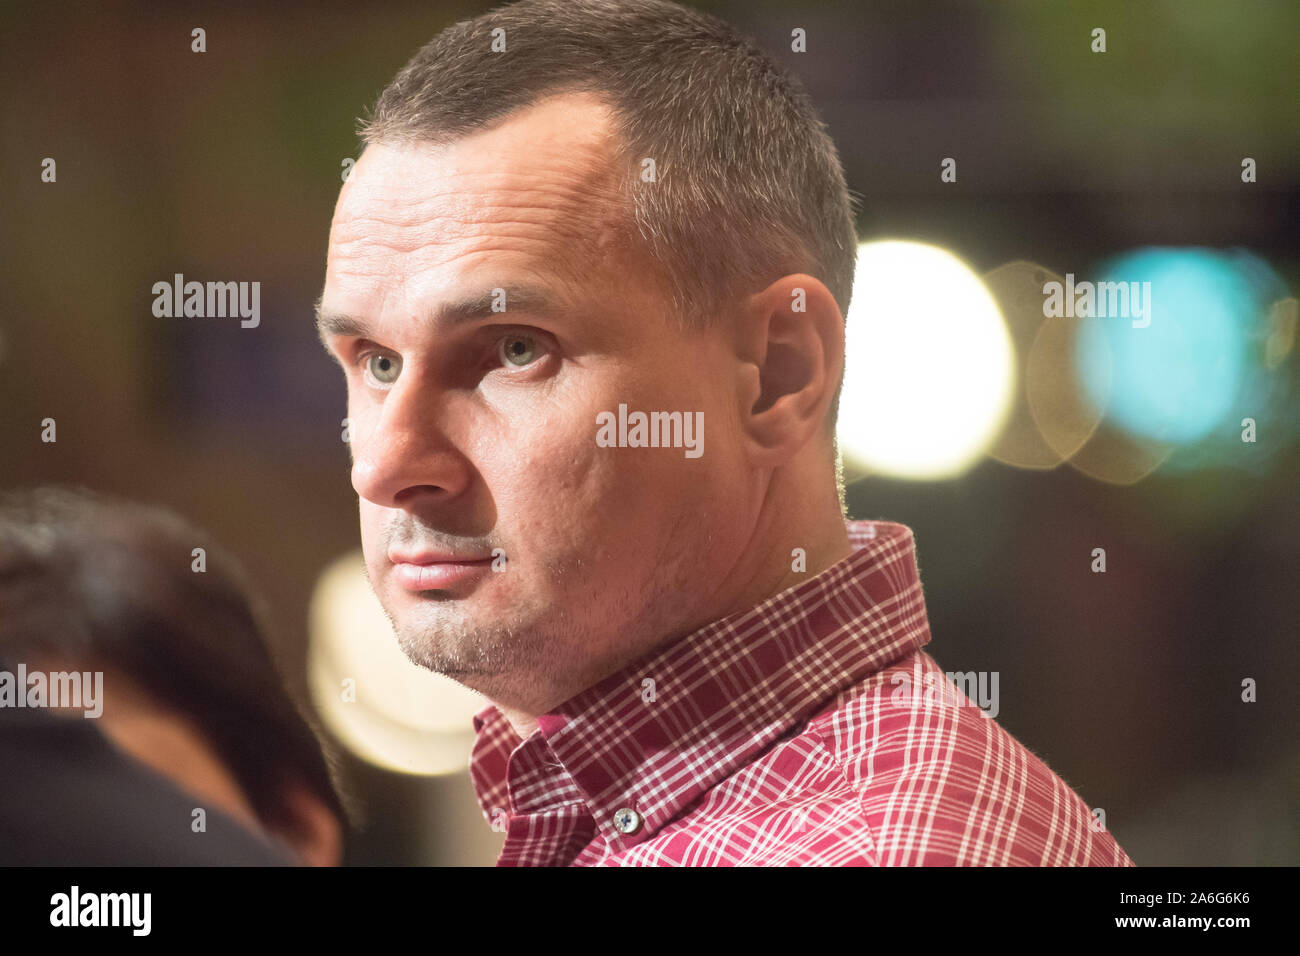 Oleg Sentsov, Ukrainien, cinéaste, écrivain et militant de la Crimée, à Gdansk, Pologne. 25 octobre 2019 © Wojciech Strozyk / Alamy Stock Photo Banque D'Images